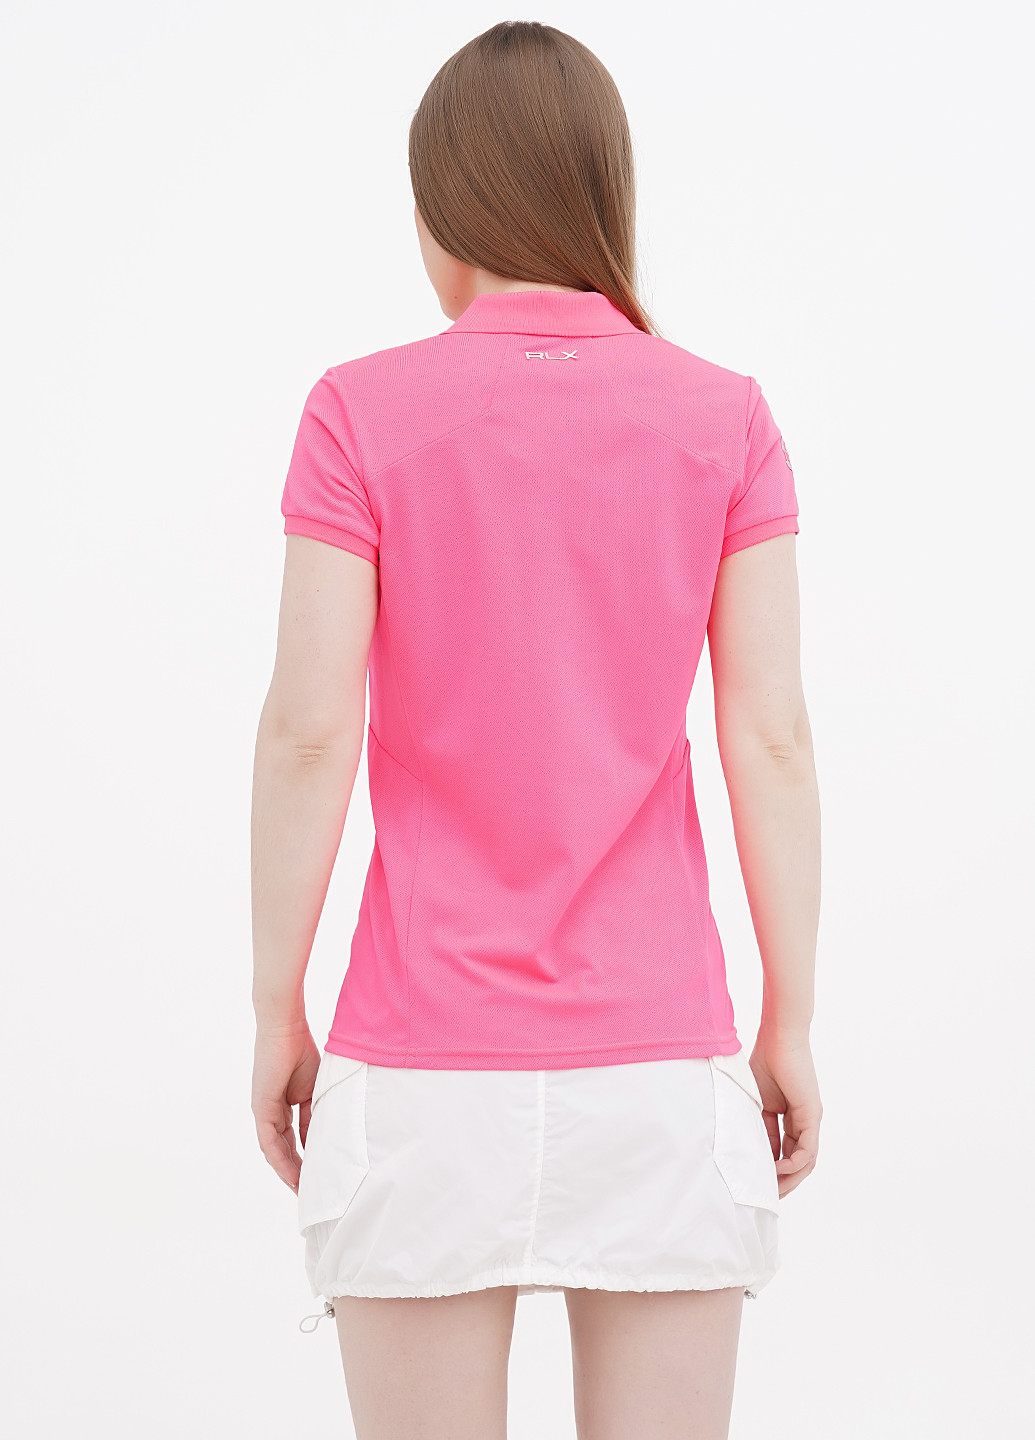 Кислотно-розовая женская футболка-поло Ralph Lauren с логотипом